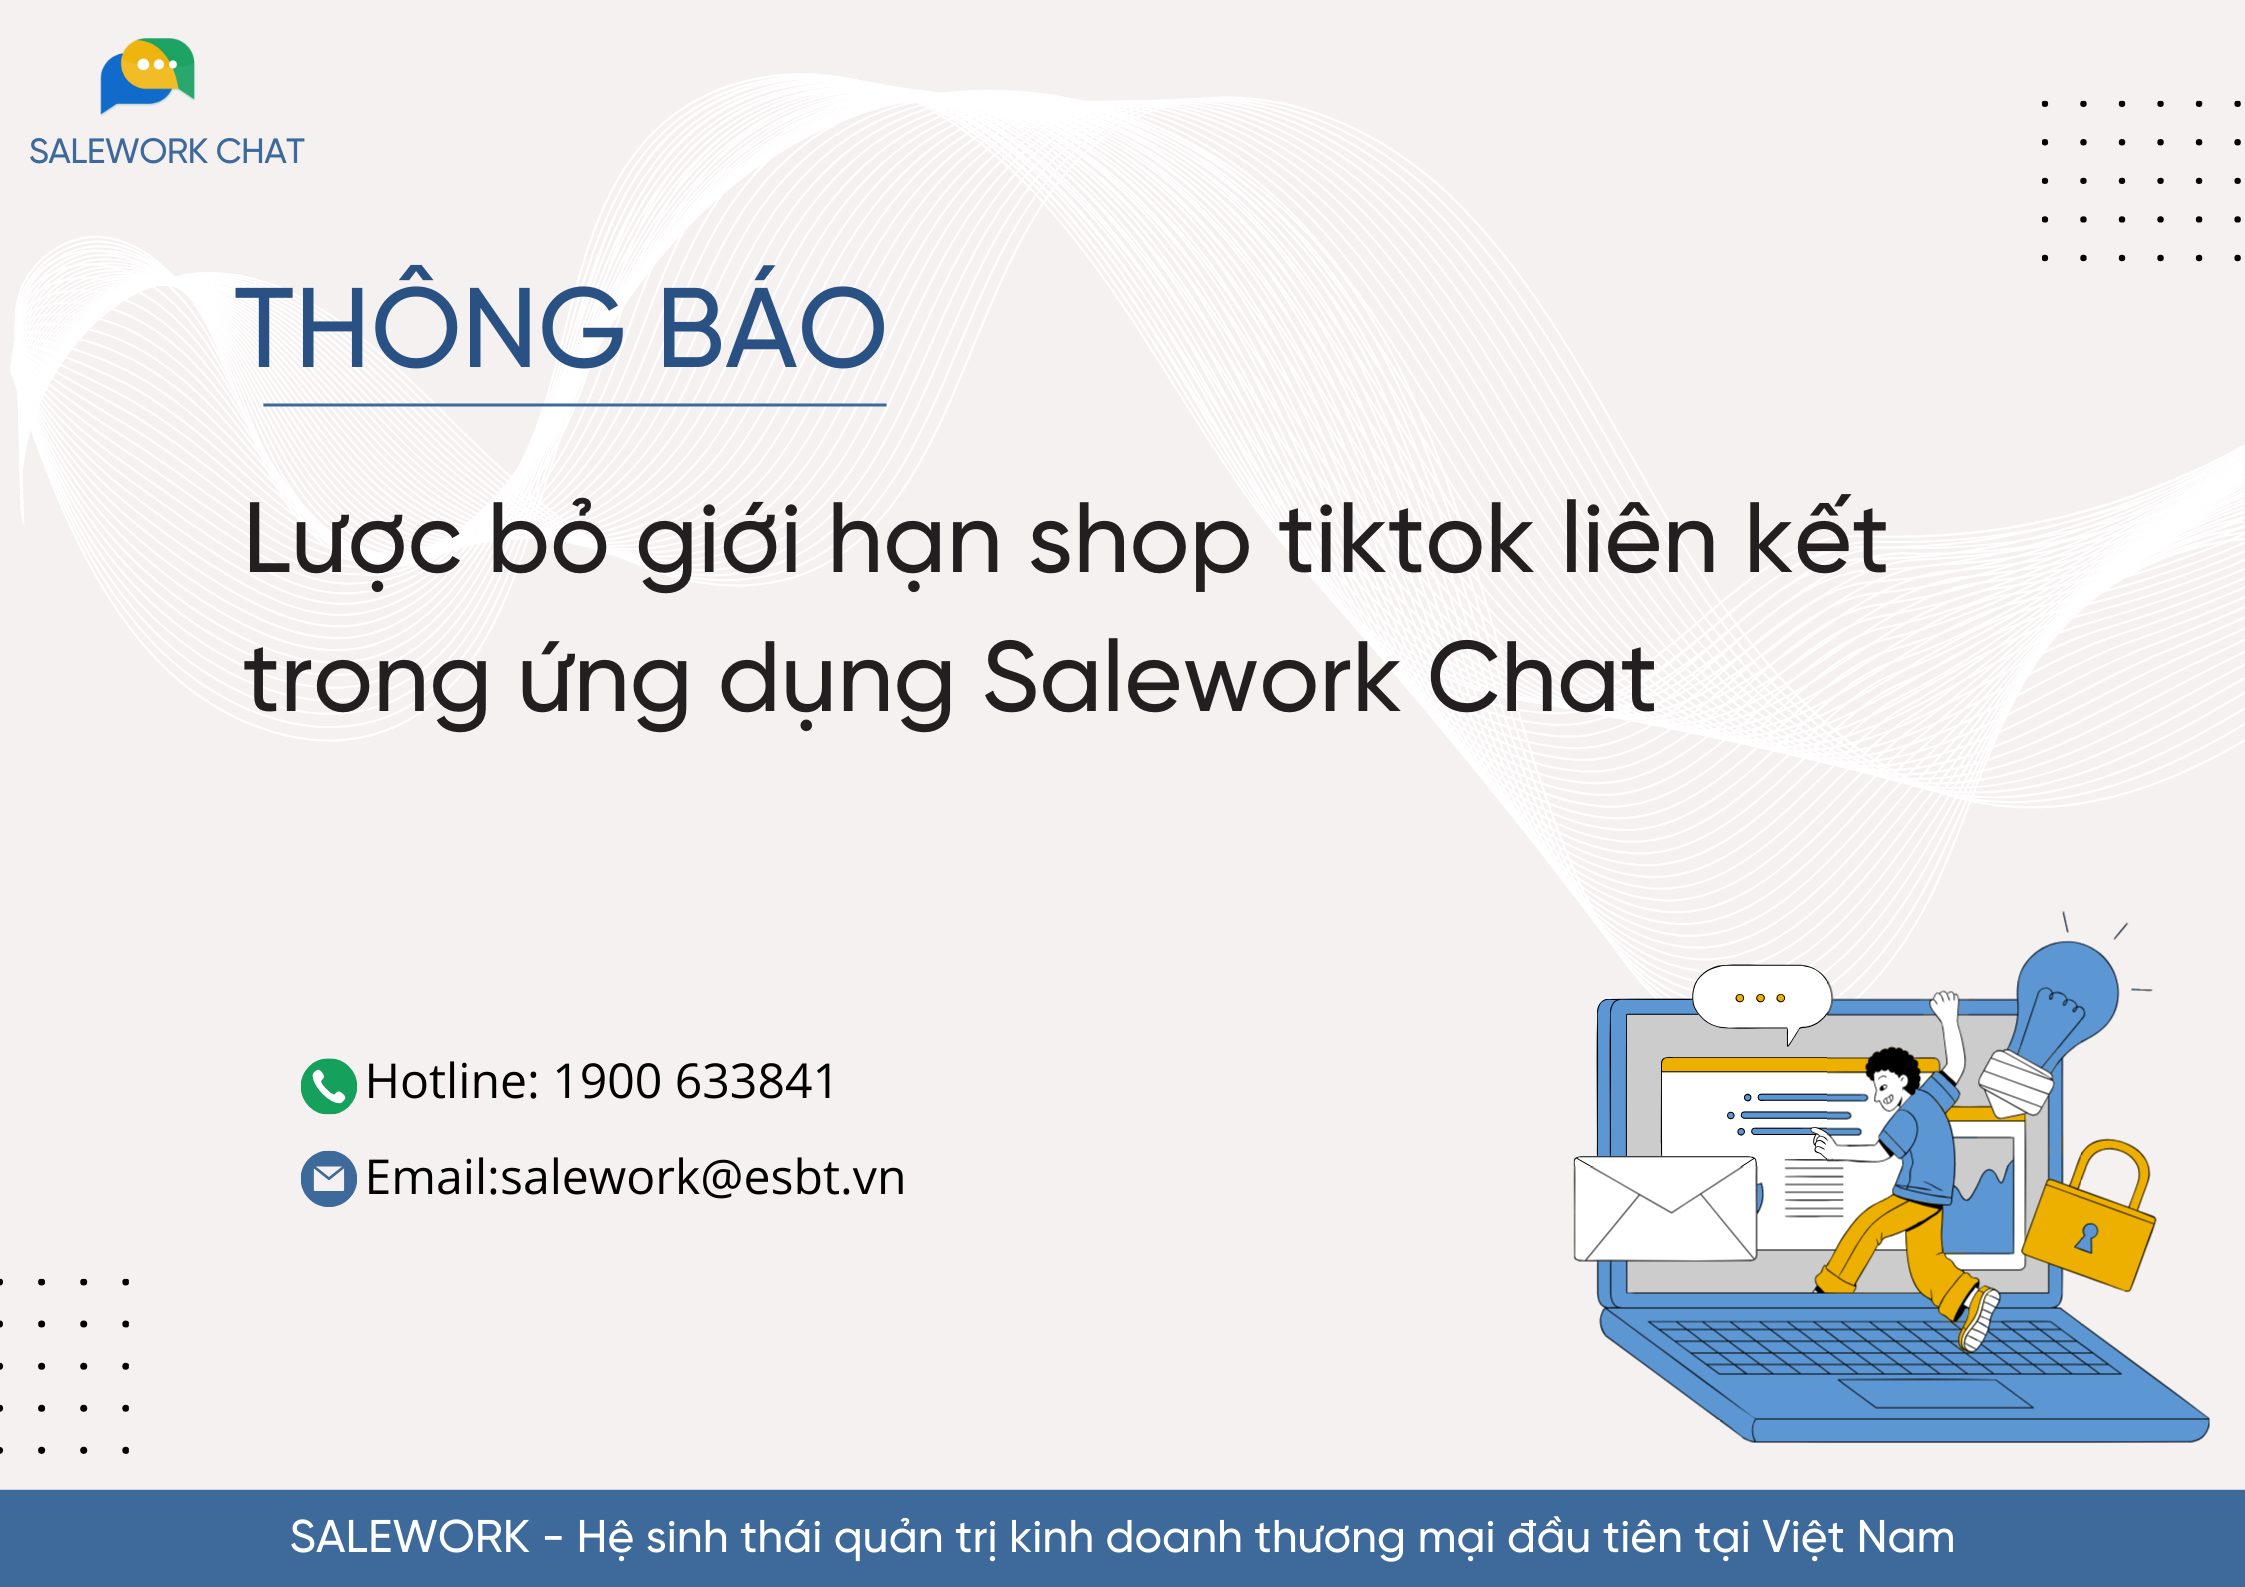 [Thông báo] Lược bỏ giới hạn shop tiktok liên kết trong ứng dụng Salework Chat - 7